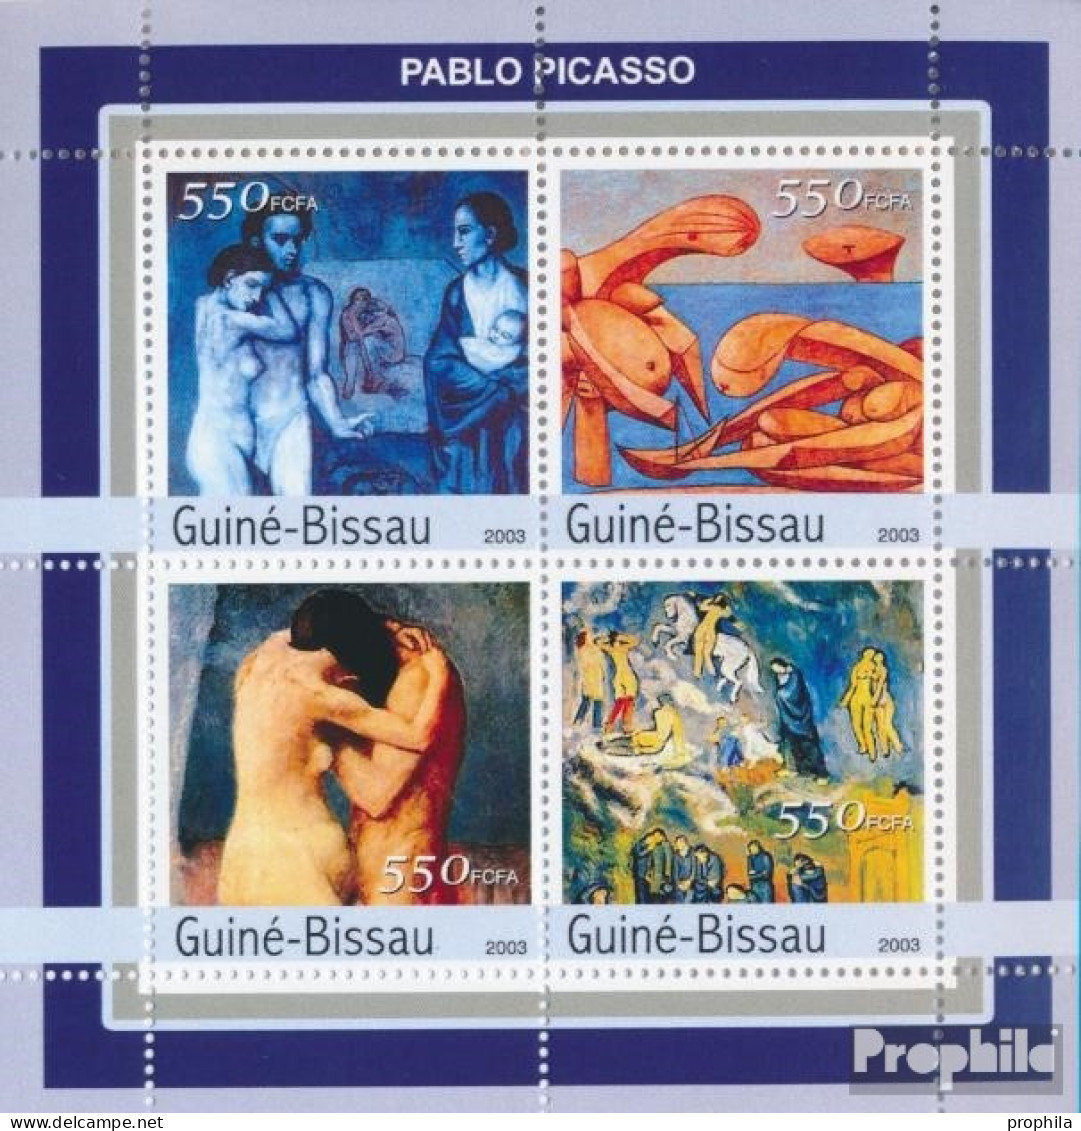 Guinea-Bissau 2105-2108 Kleinbogen (kompl. Ausgabe) Postfrisch 2003 Akte Von Picasso - Guinea-Bissau